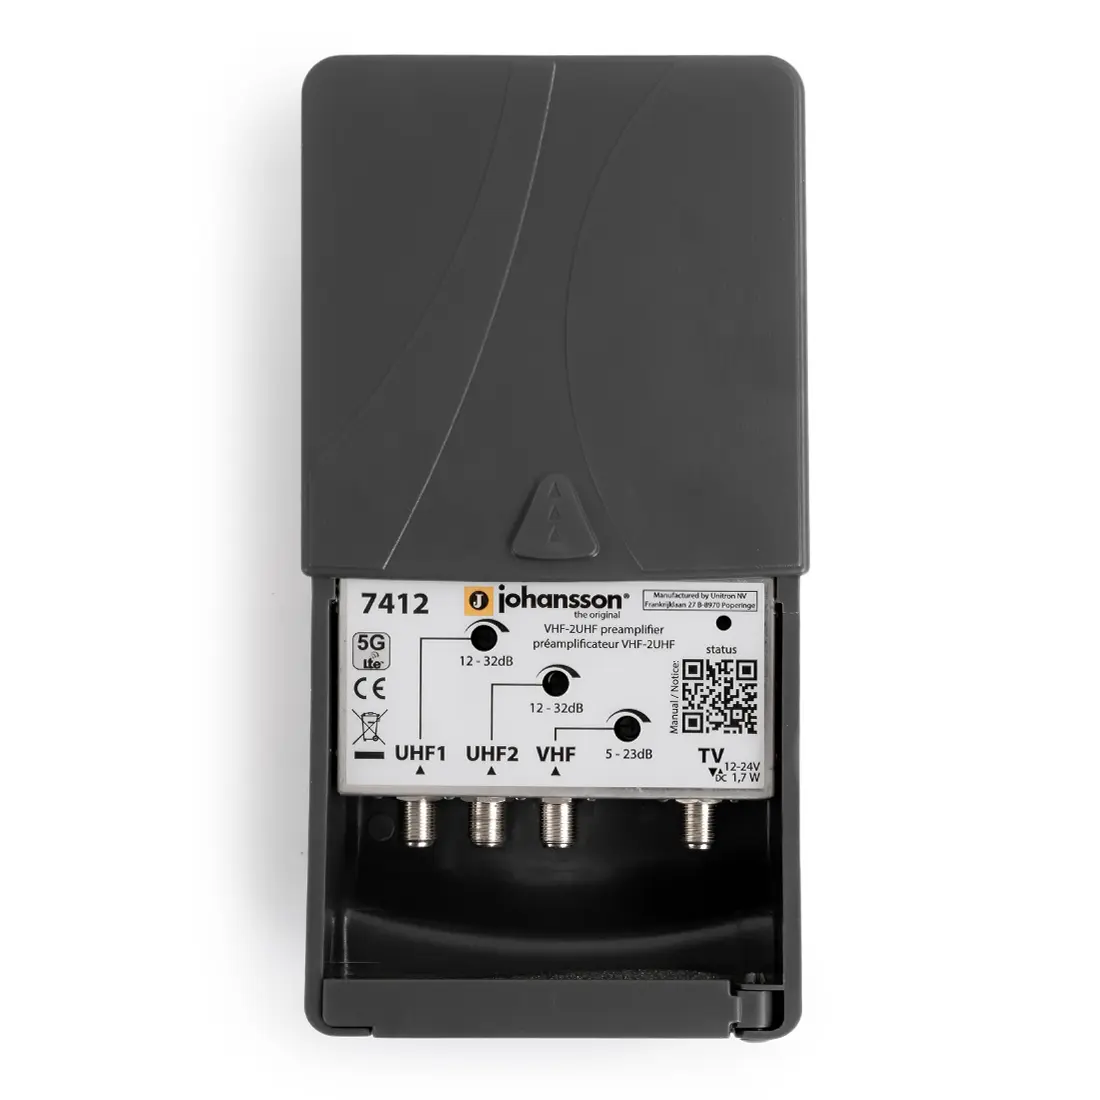 Wzmacniacz masztowy 2x UHF+VHF Johansson 7412 LTE (5G)